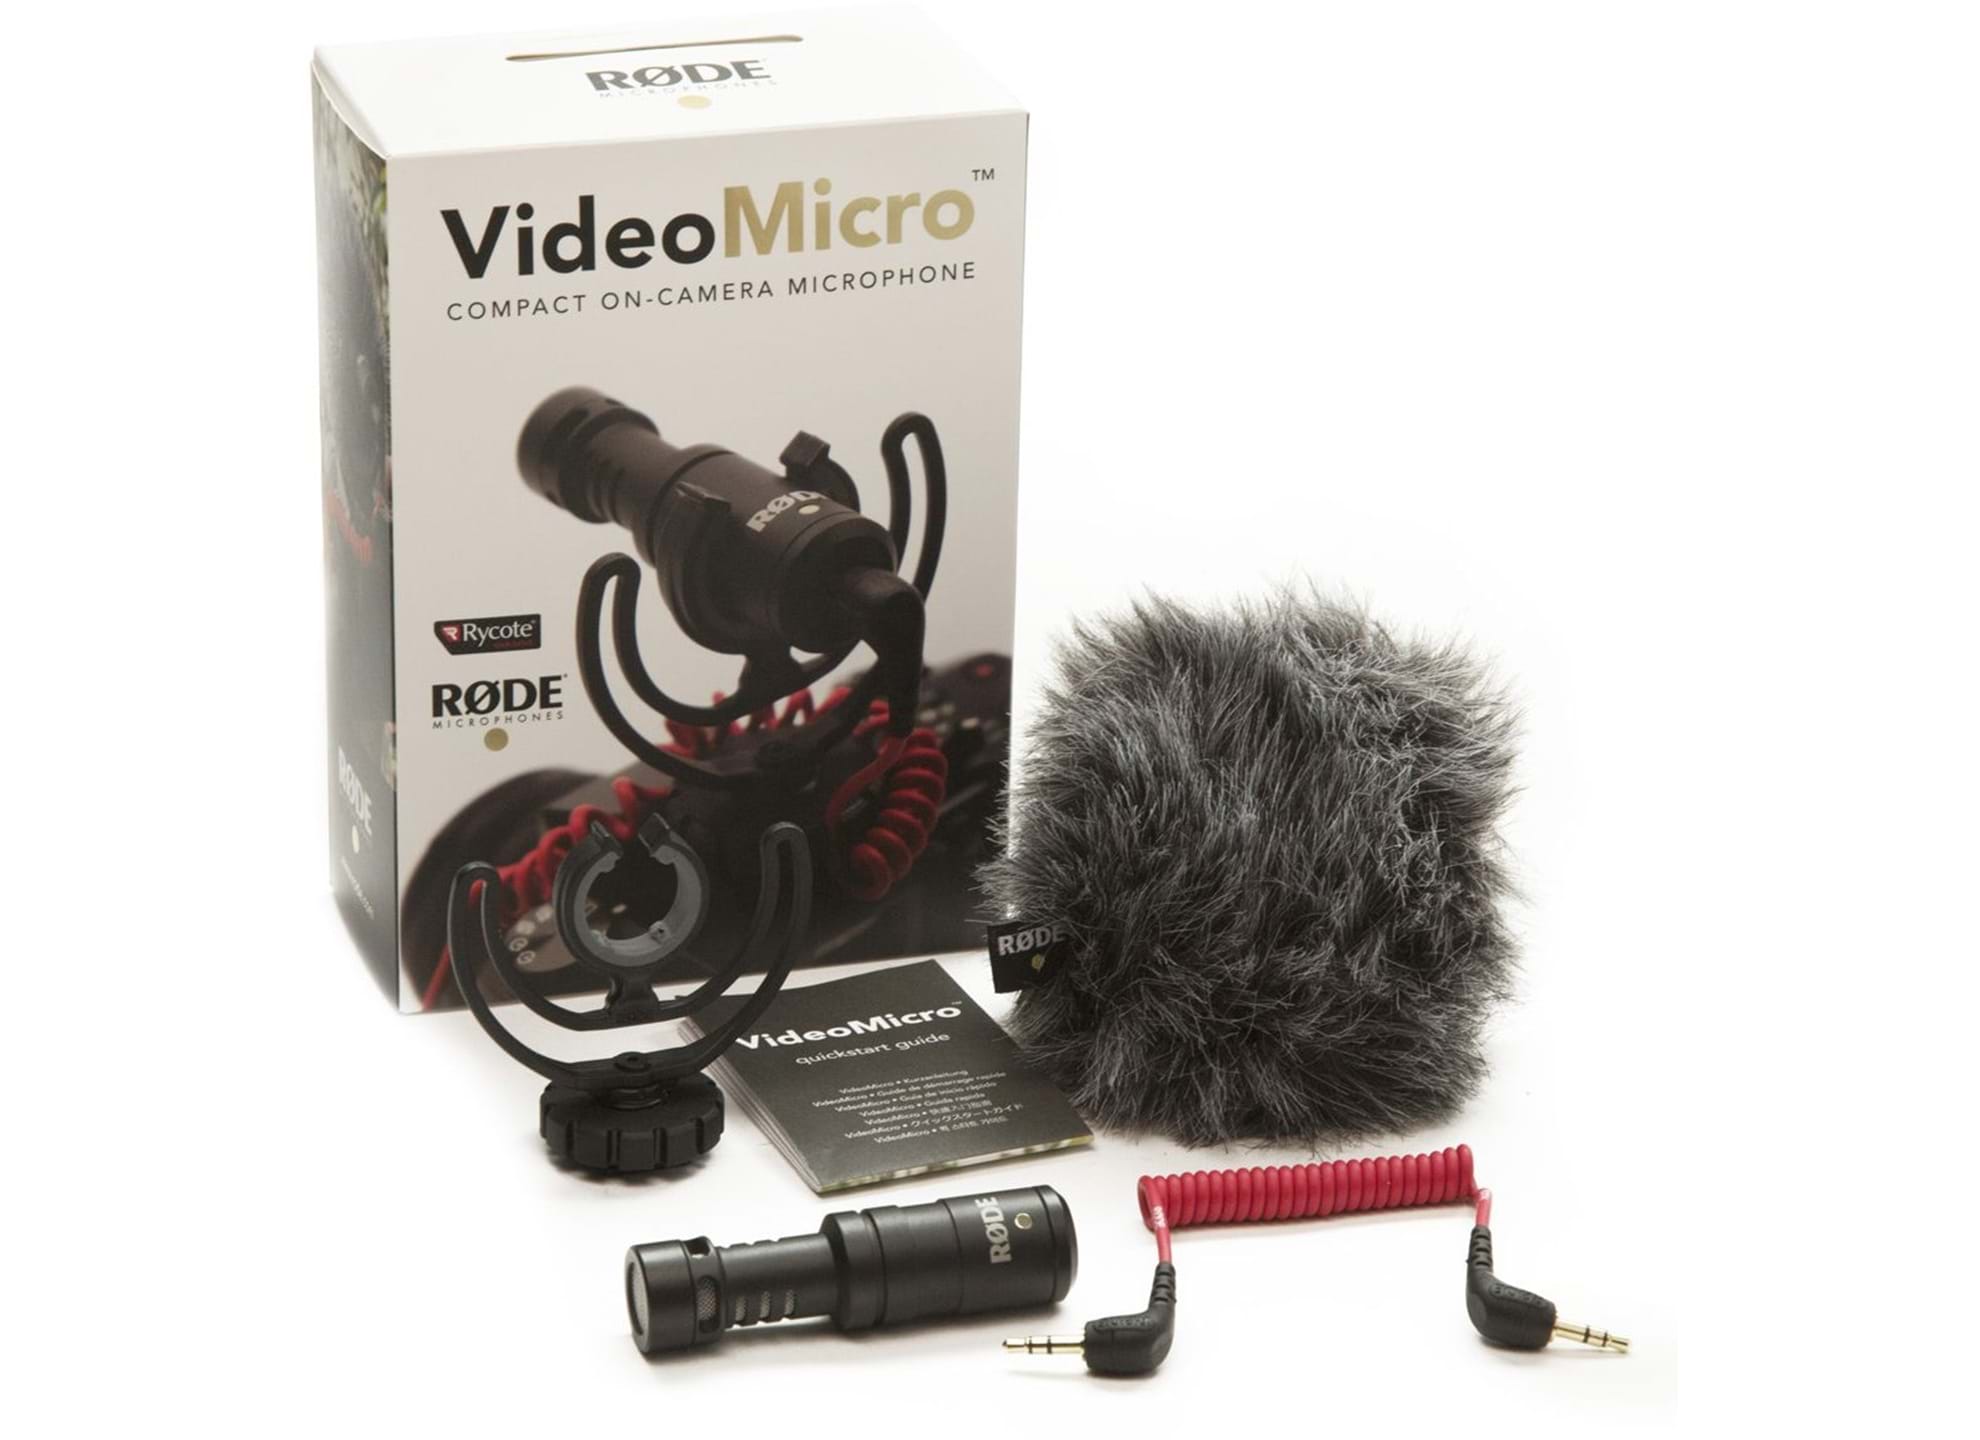 VideoMicro